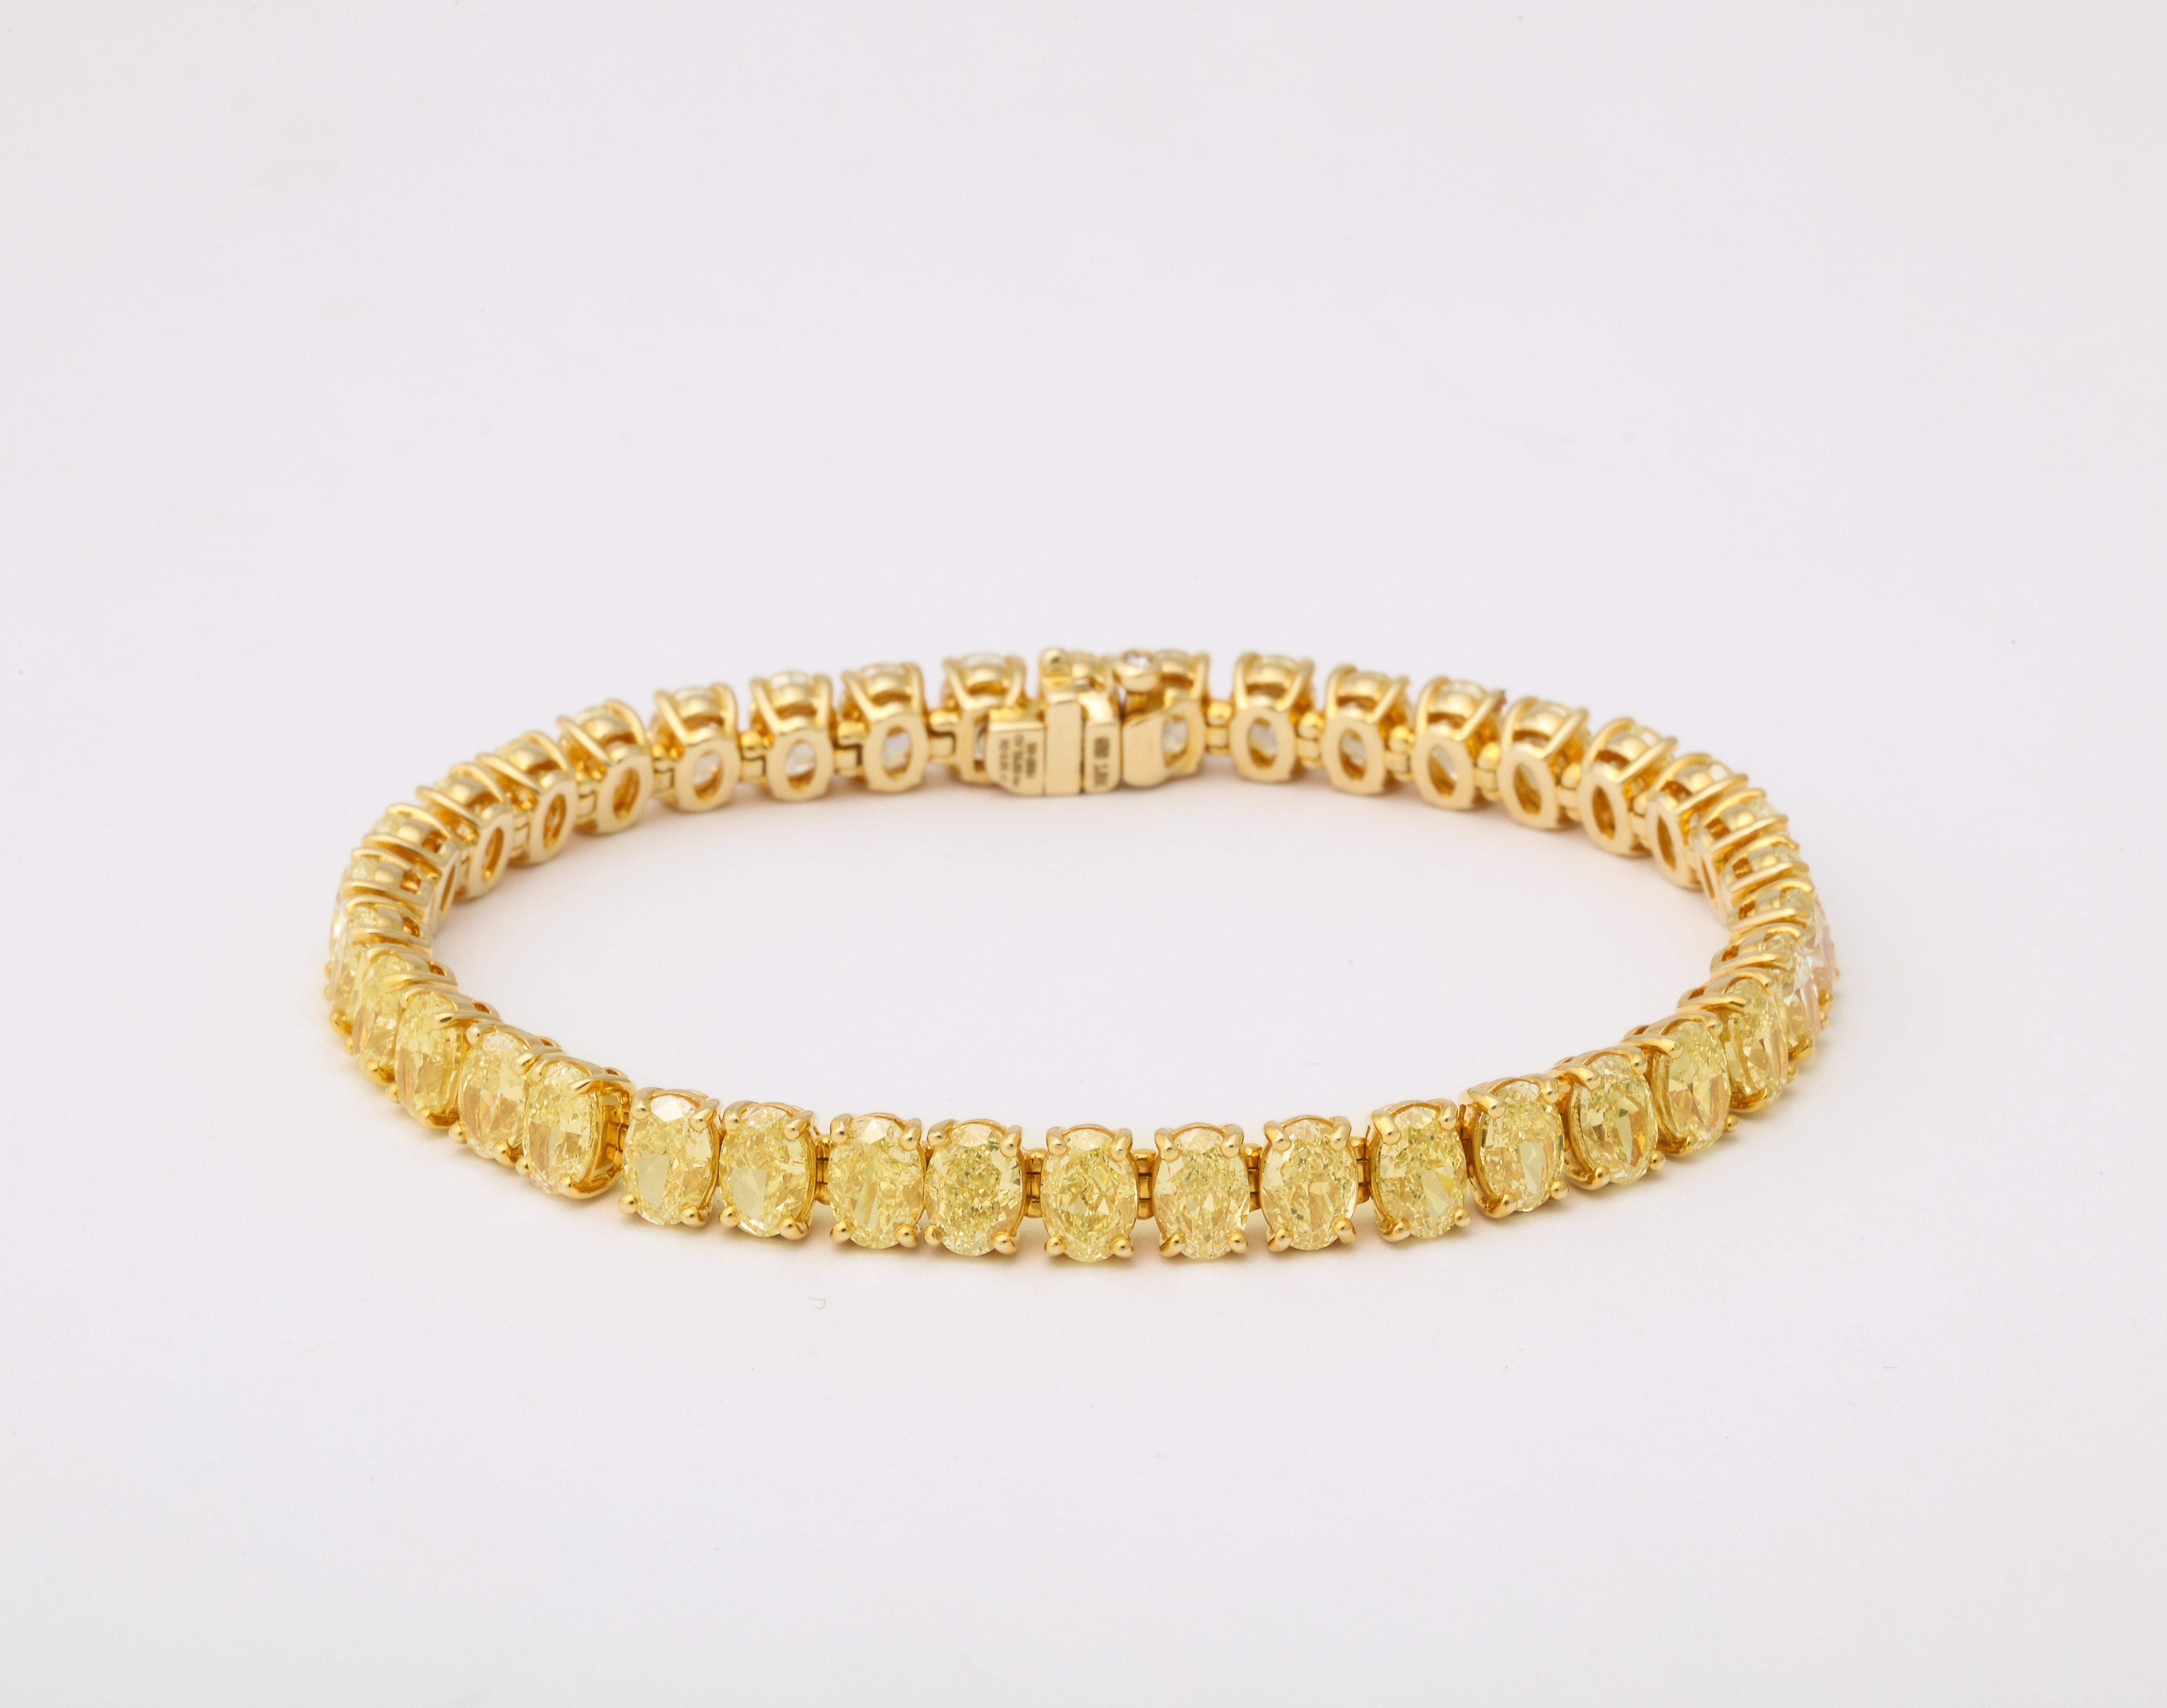 
Une incroyable collection de diamants jaunes ovales magnifiquement montés dans un bracelet en ligne. 

19,06 carats de diamant jaune - chaque diamant ovale pèse en moyenne un demi-carat. 

Serti dans une monture en or jaune 18 carats faite sur